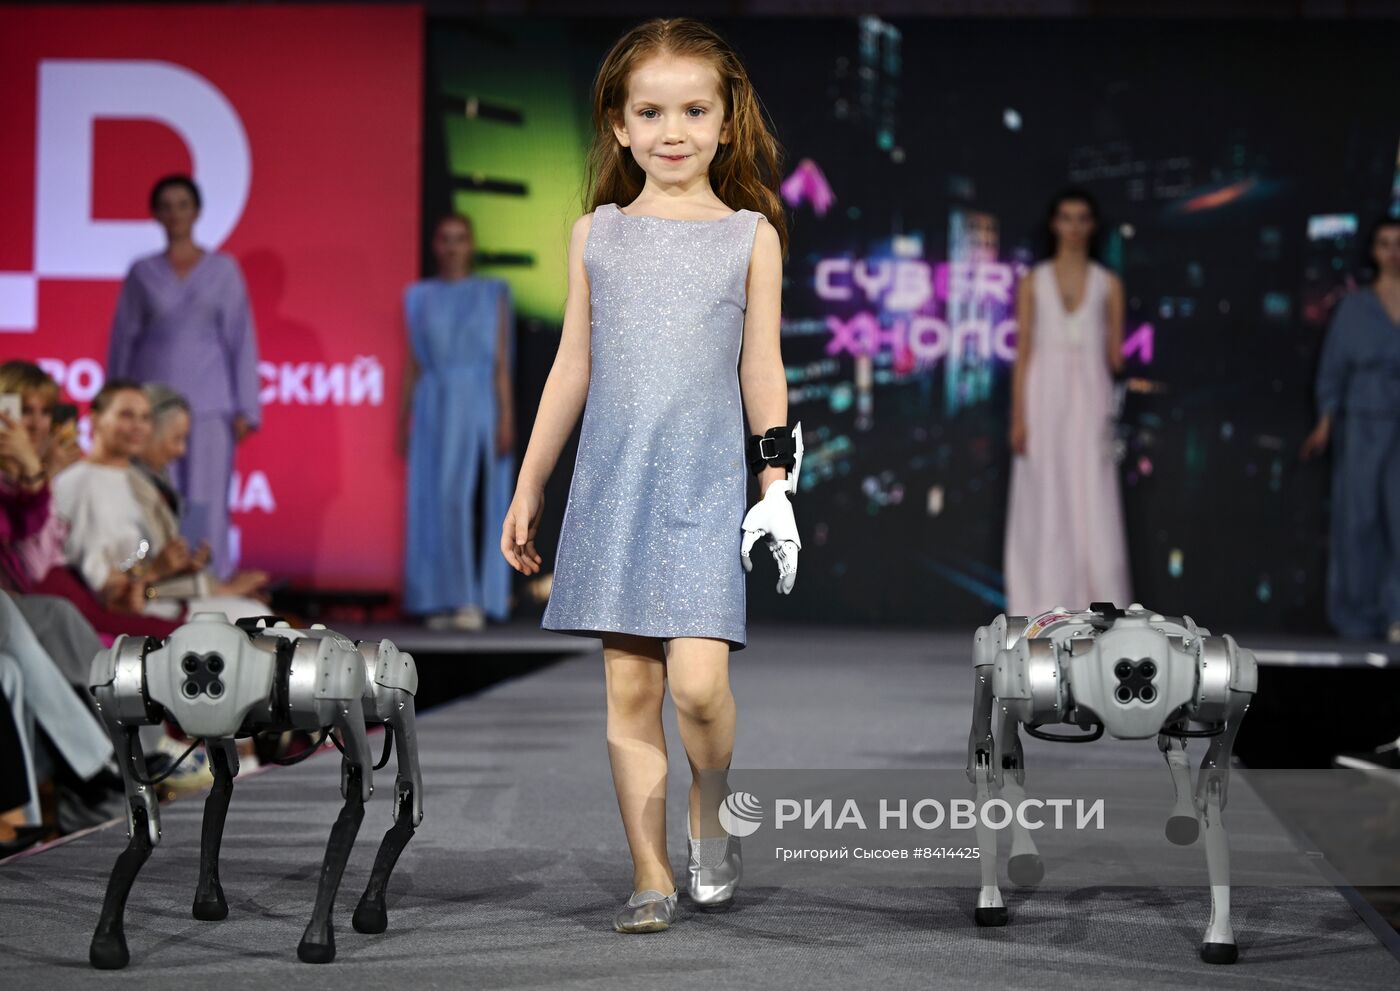 Российский форум дизайна и моды